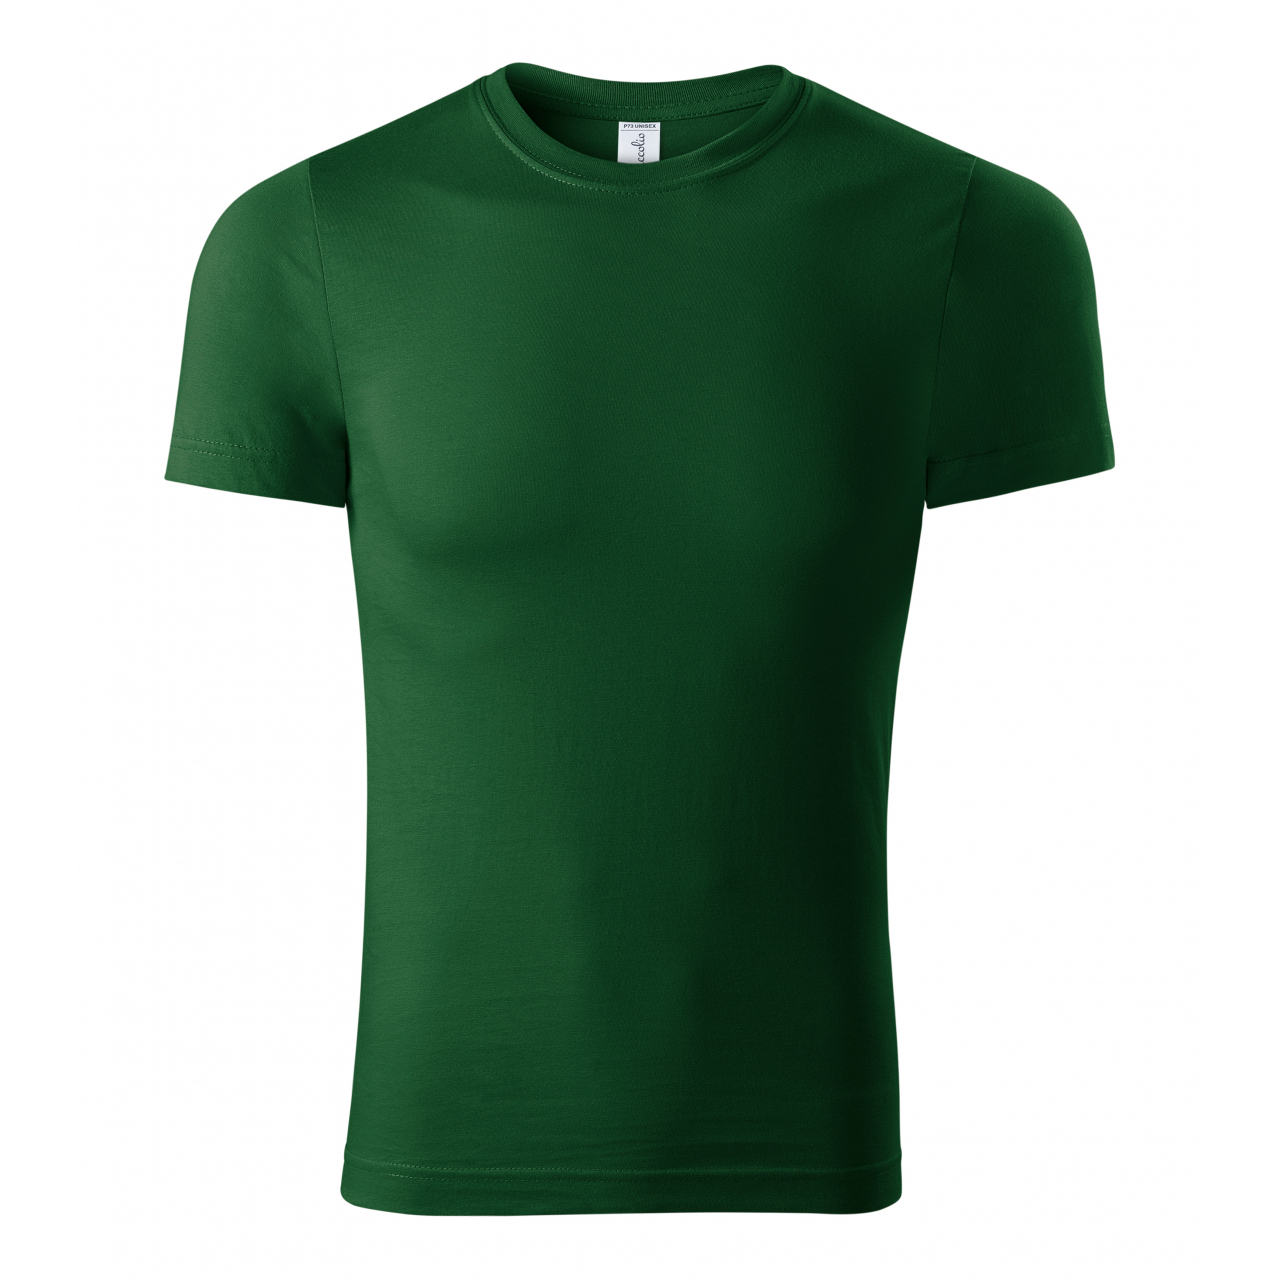 Tričko unisex Piccolio Paint - tmavě zelené, XS